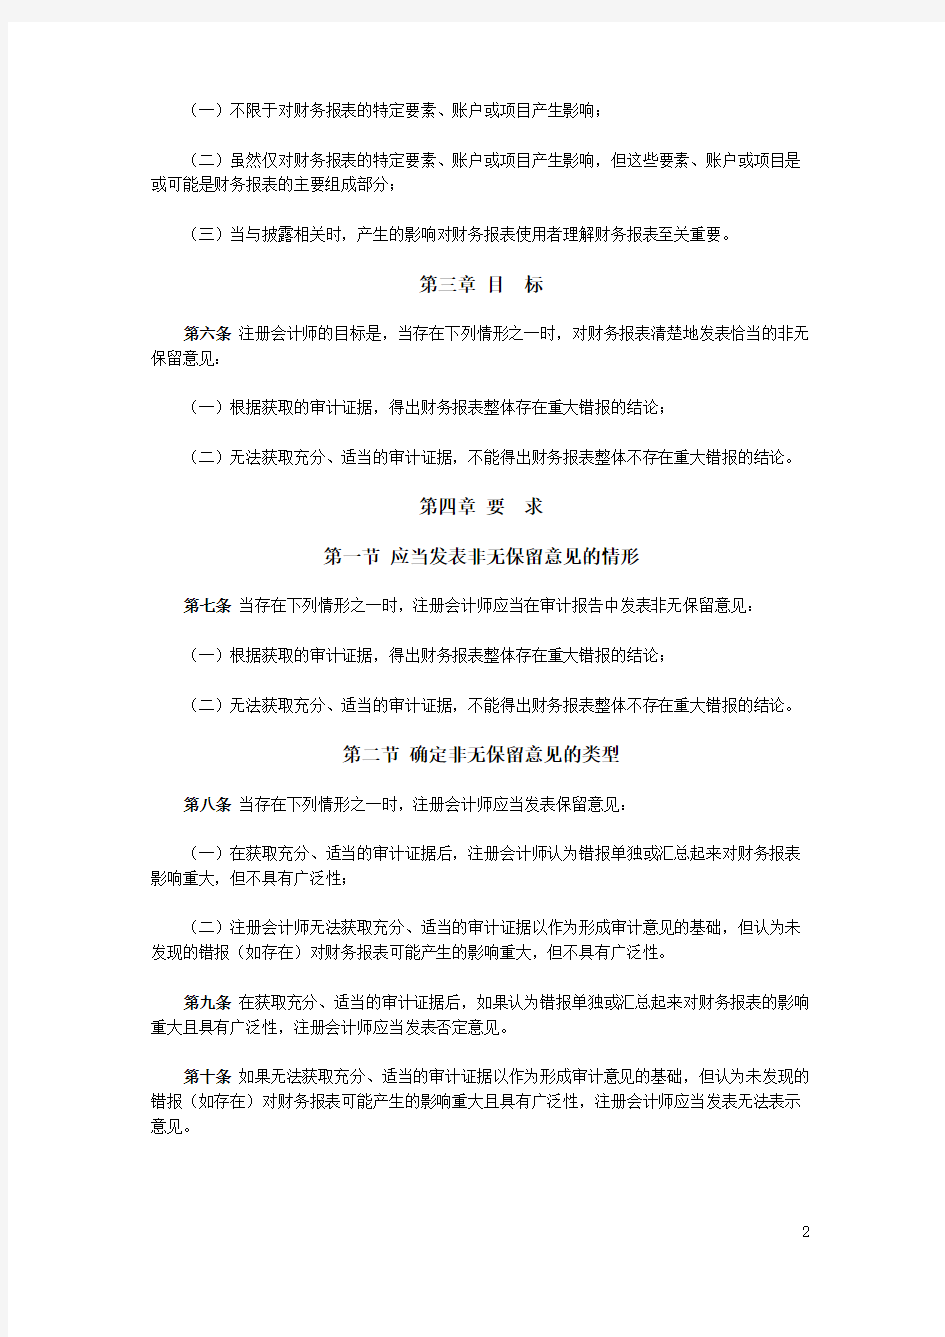 中国注册会计师审计准则第1502号——在审计报告中发表非无保留意见